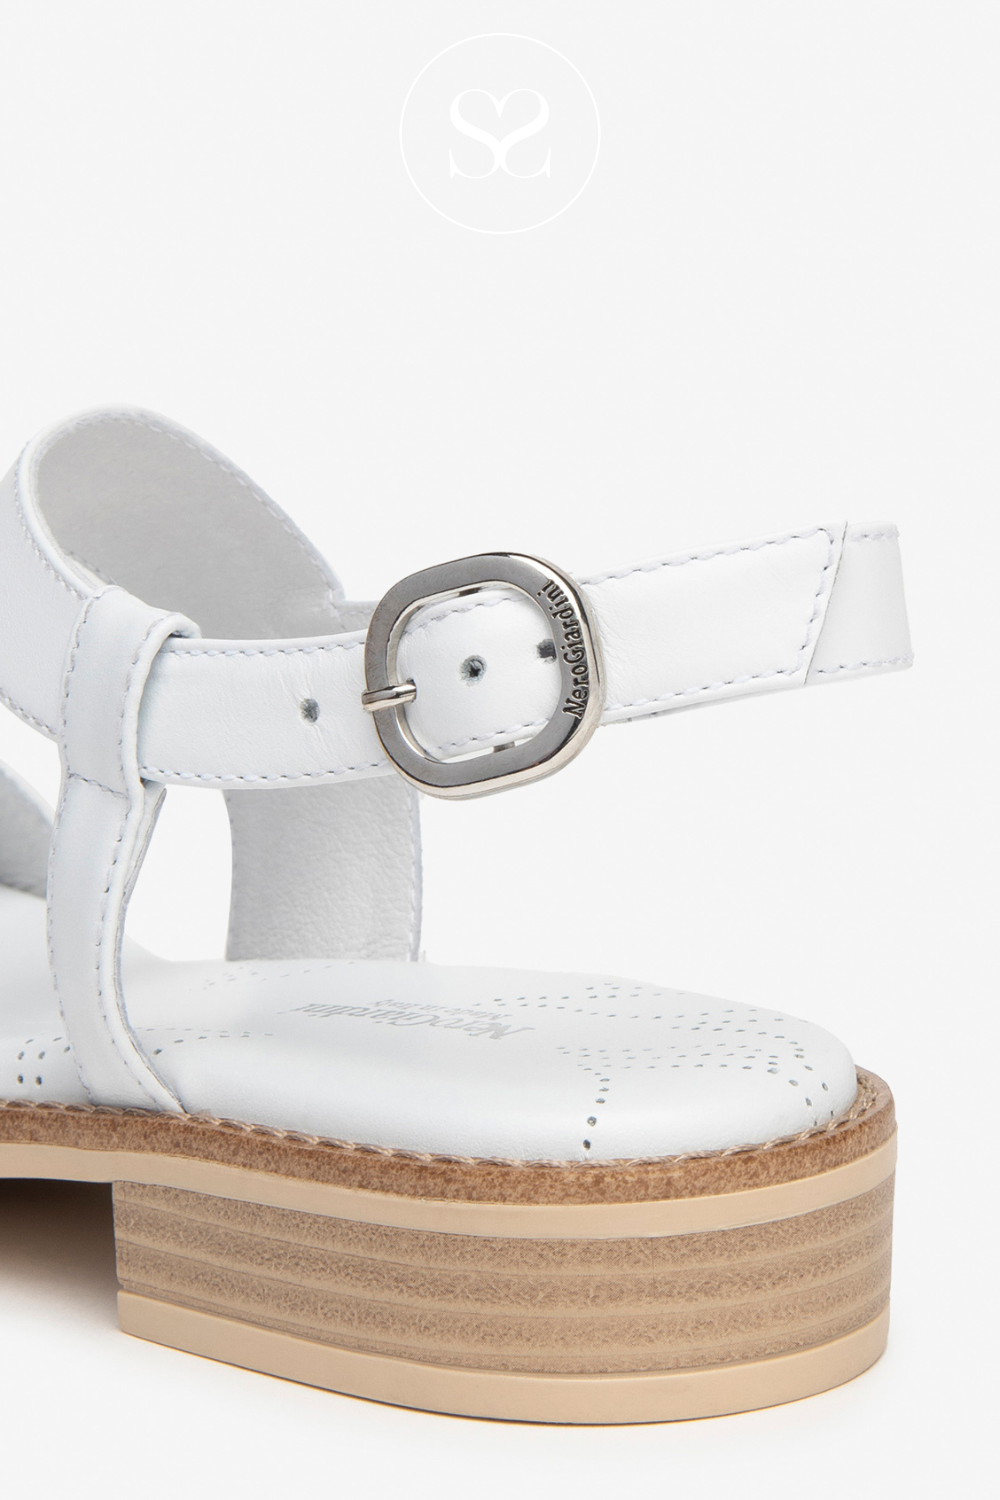 Nero Giardini white sandals for Women Ireland